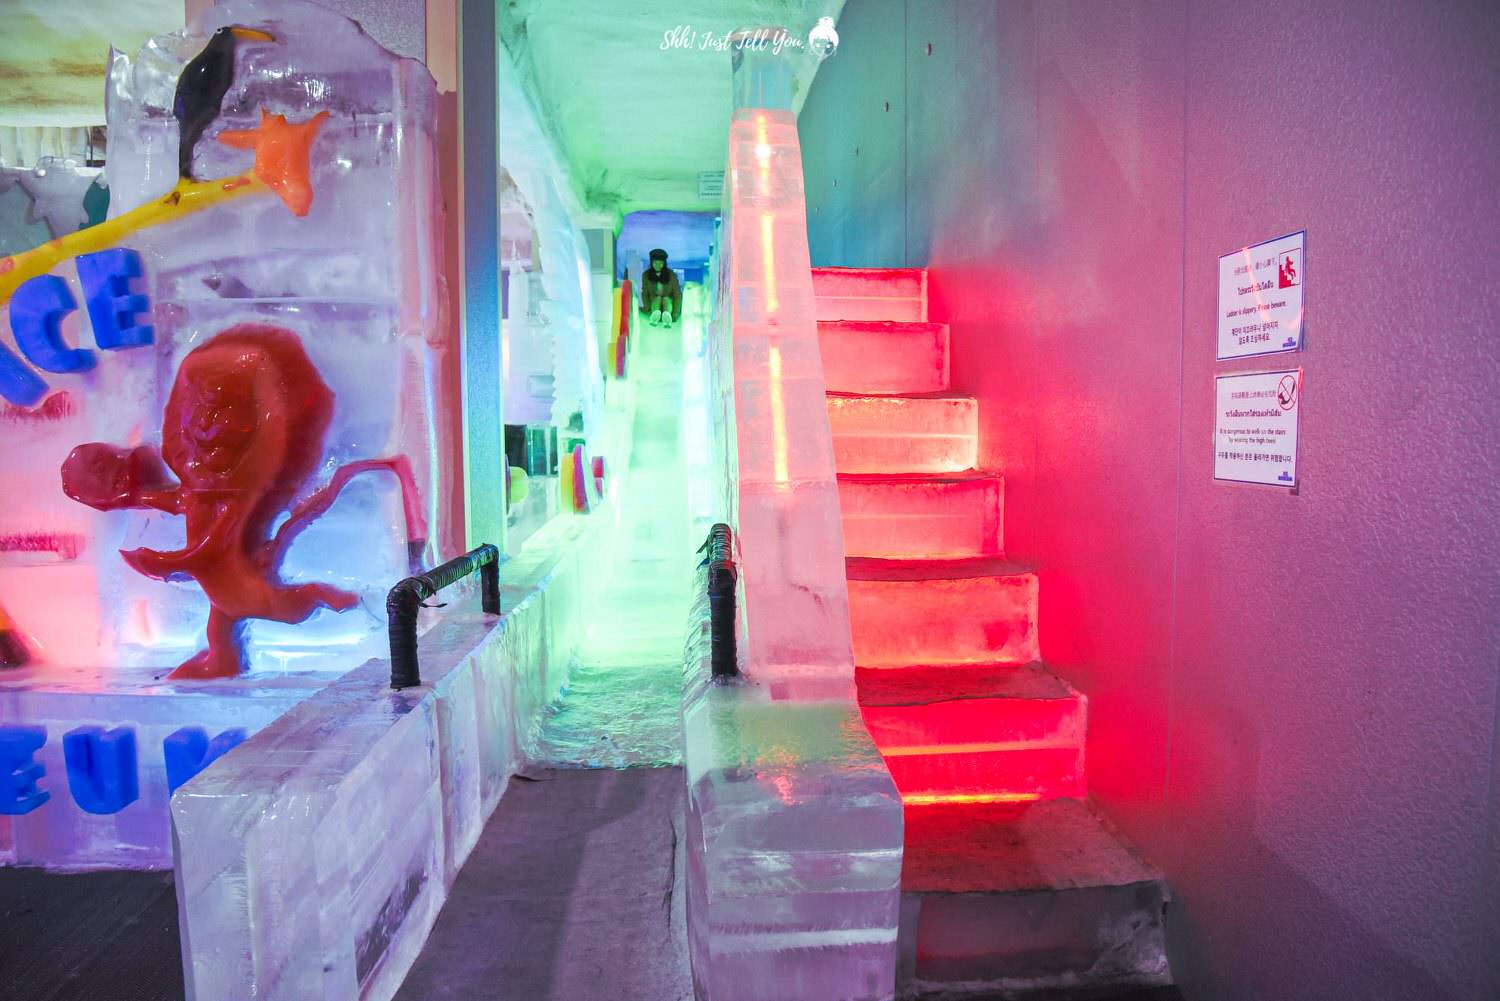 韓國首爾Ice Museum愛麗特冰雕博物館